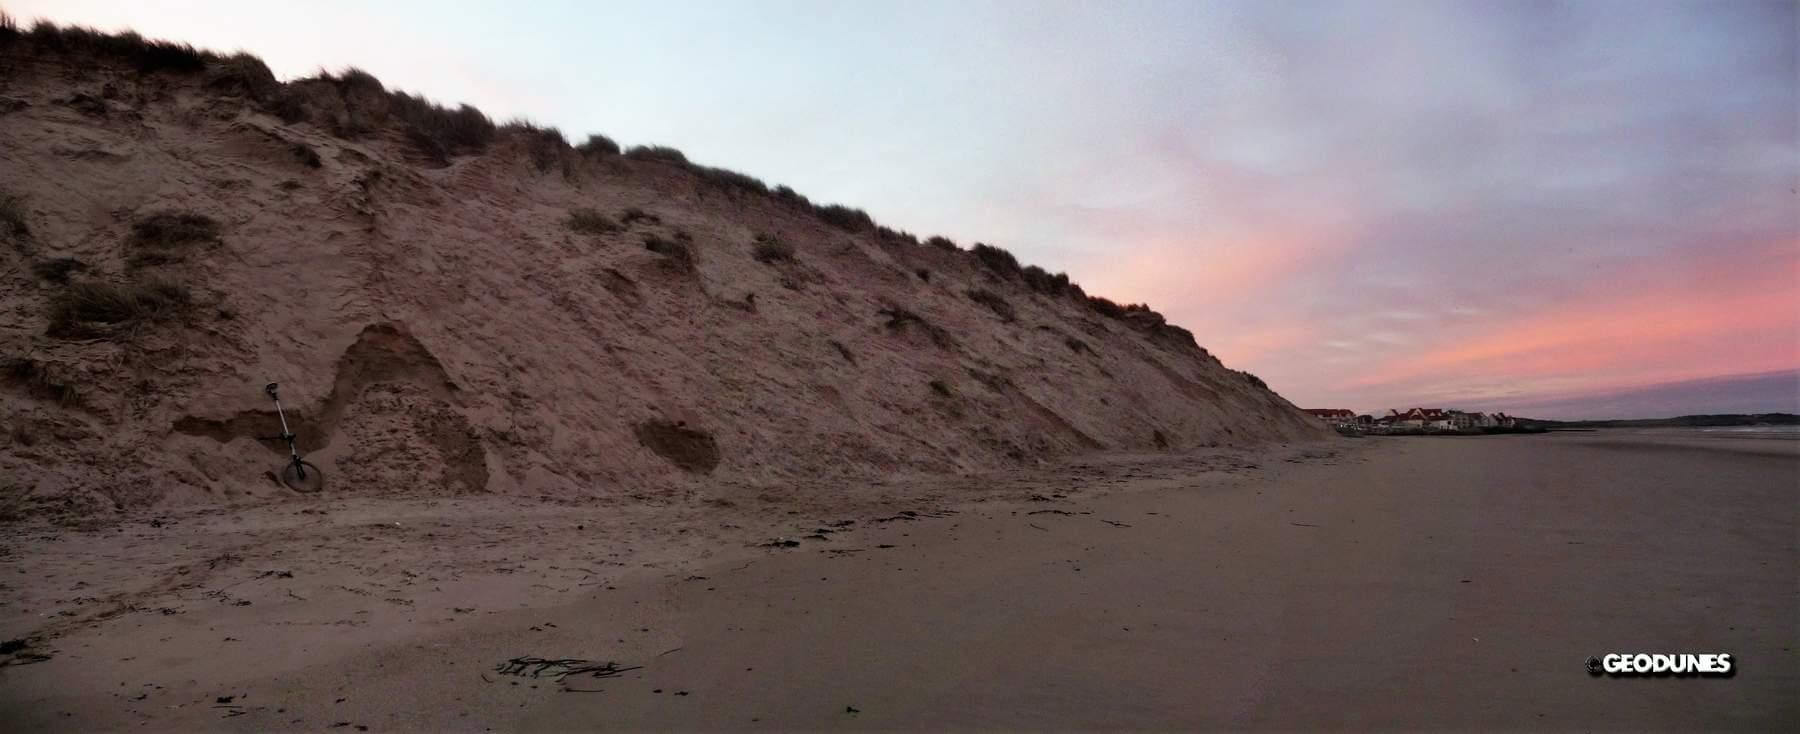 Falaises dunaires, dune d’amont - Novembre 2013